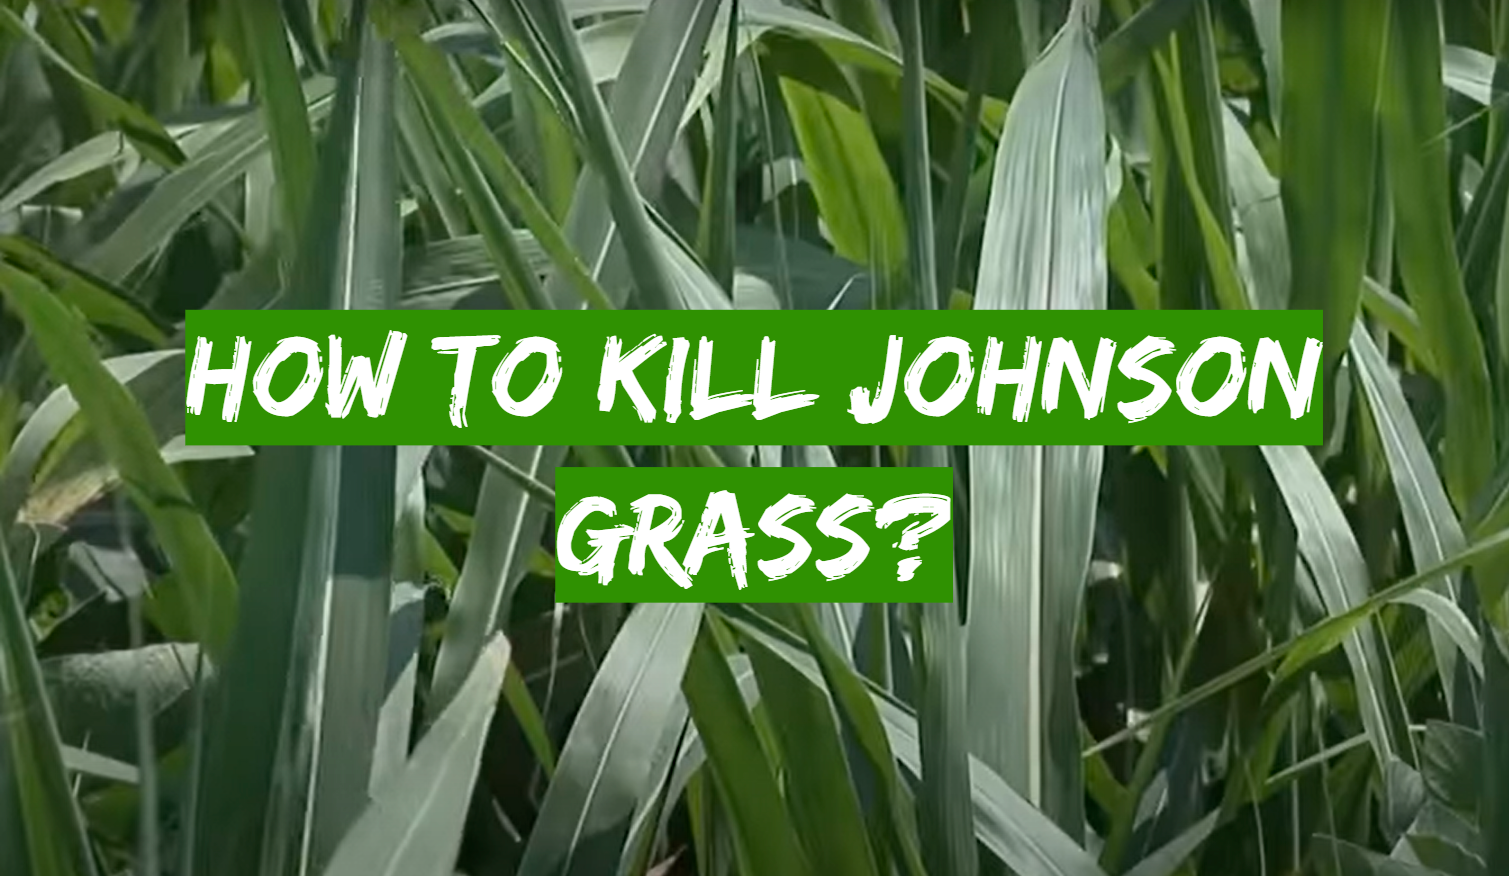 How to Kill Johnson Grass?